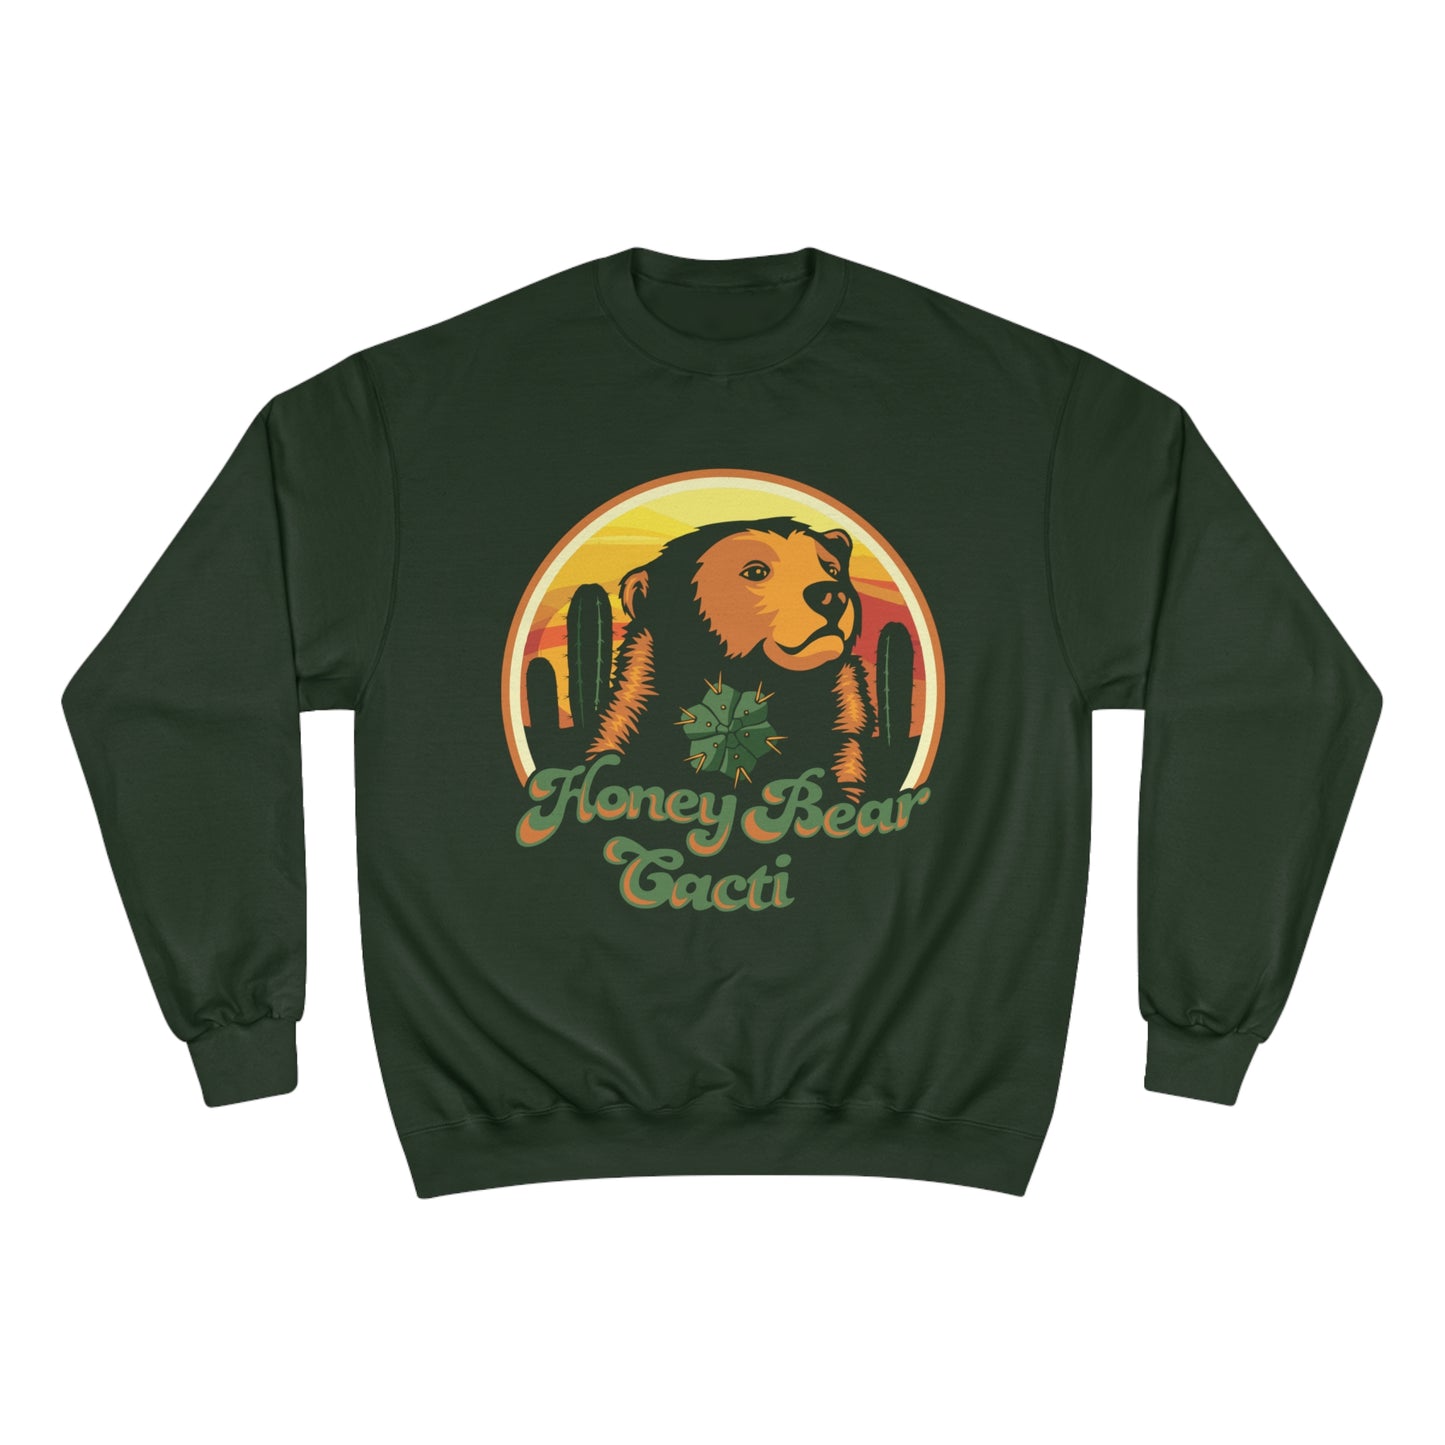 HoneyBear Cacti Champion Sweatshirt!